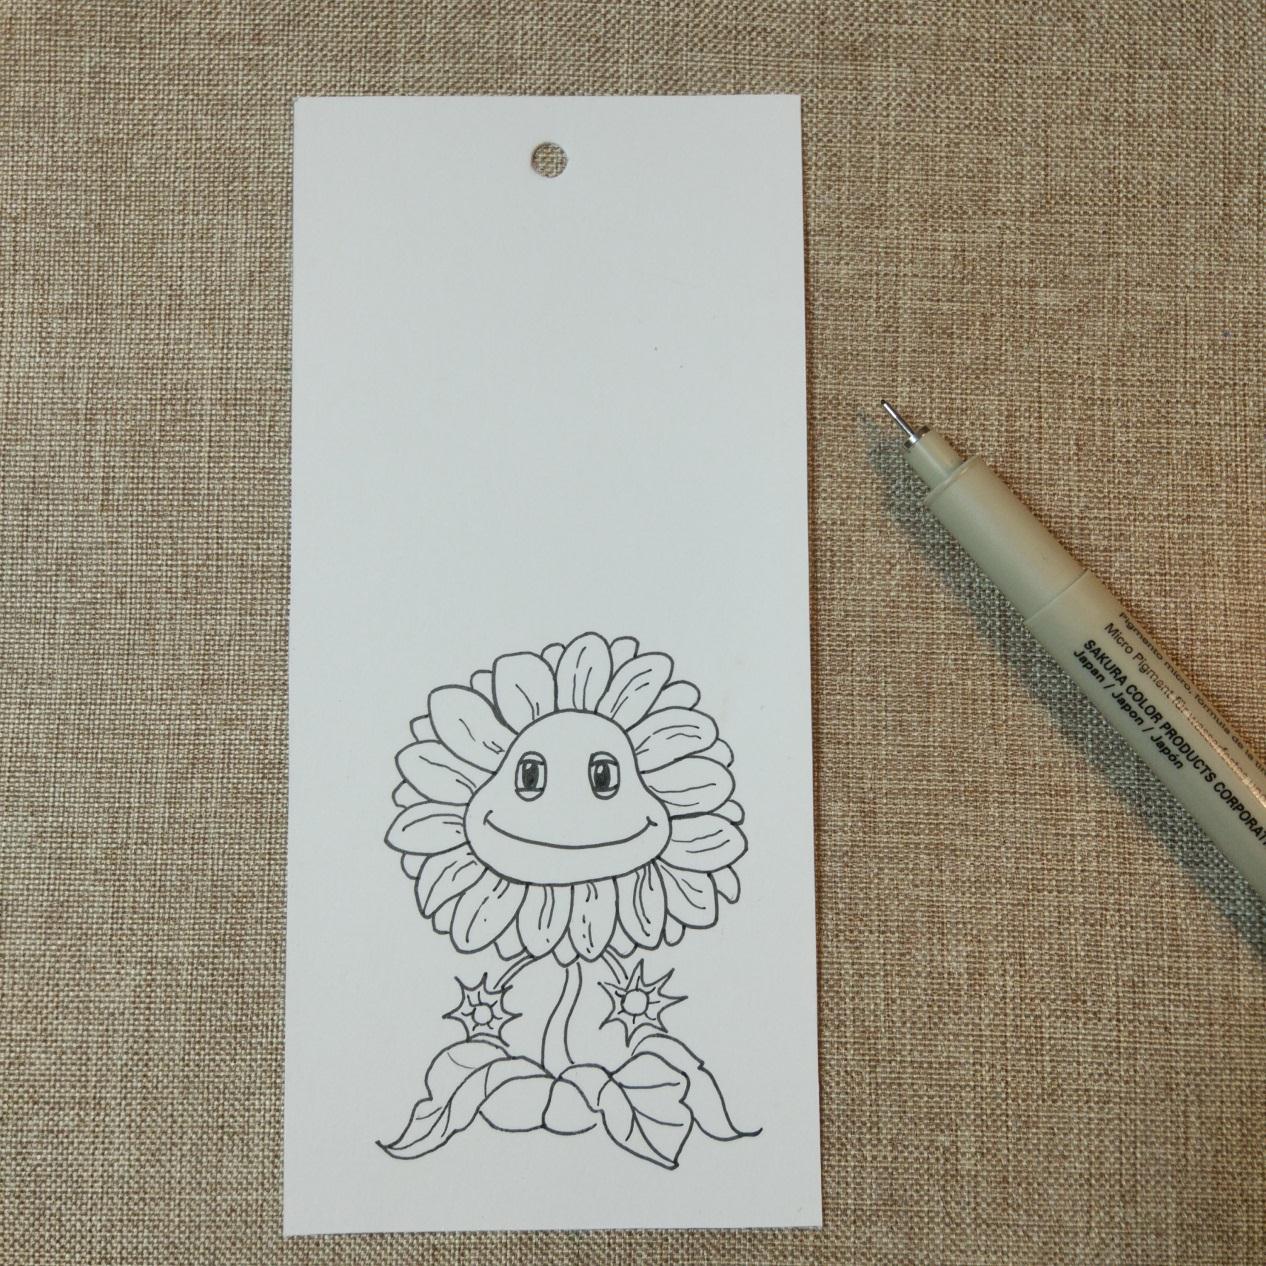 教你制作简单的水彩画书签 可爱花卉图案向日葵的画法